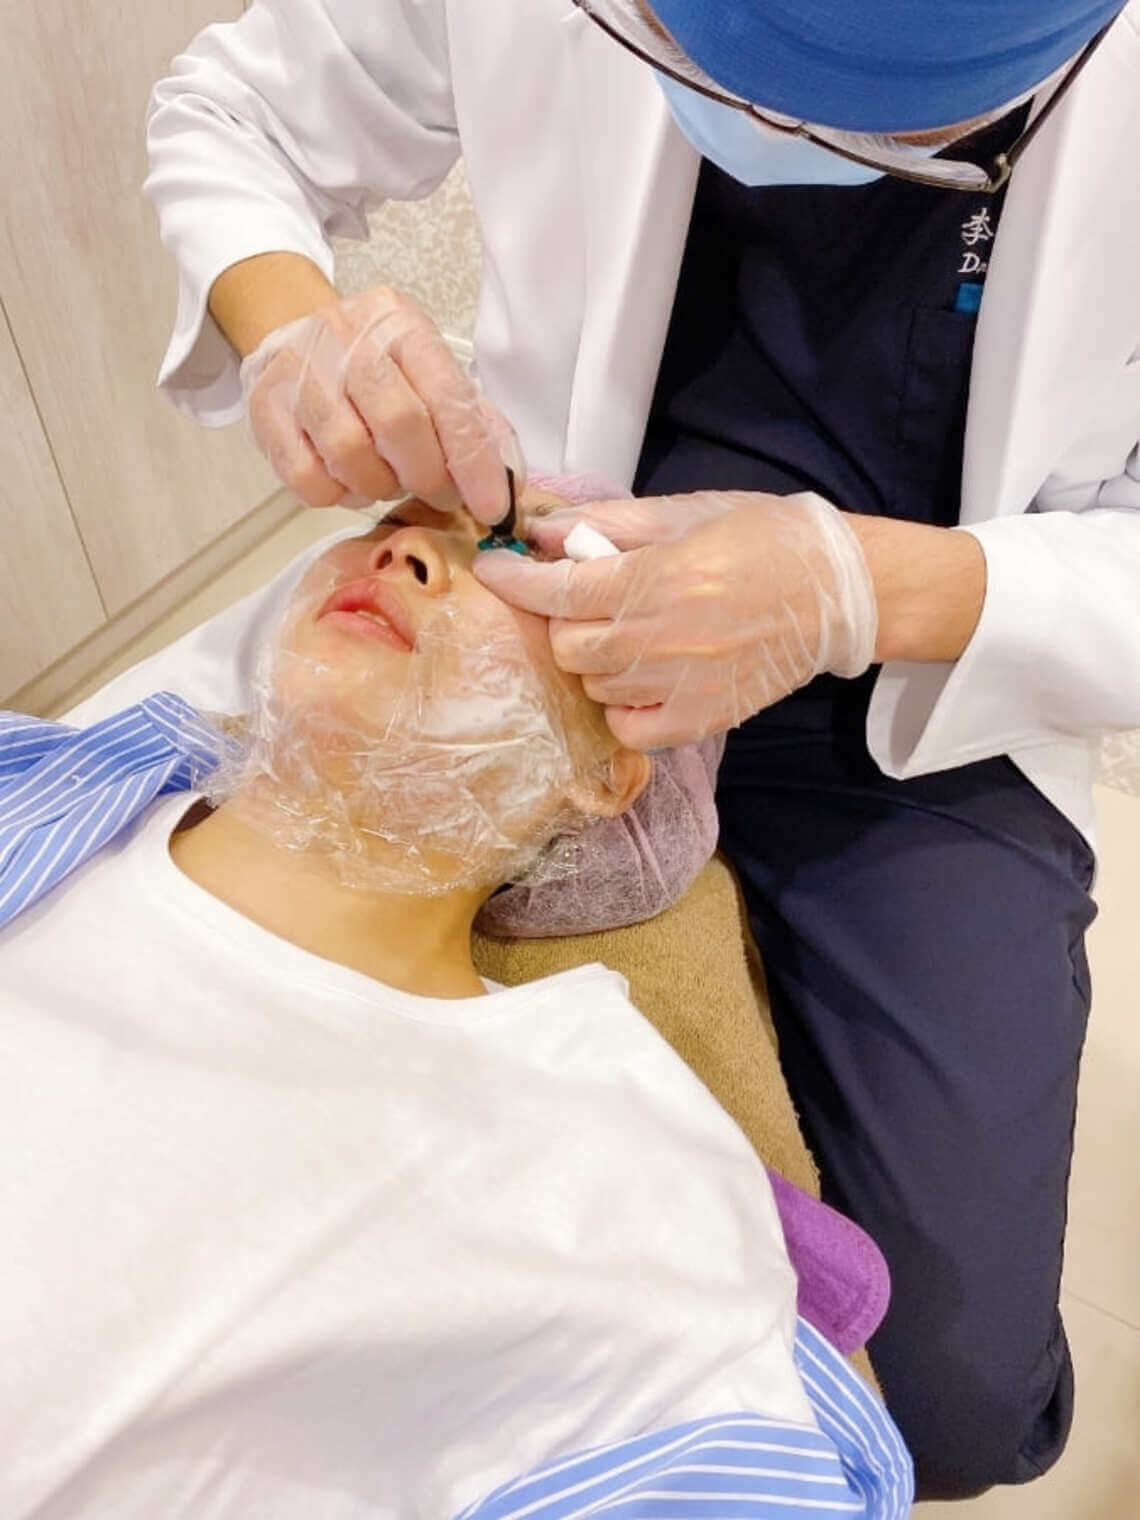 佳思優整形外科美學診所李博文醫師鳳凰電波拉皮治療前戴保護眼罩